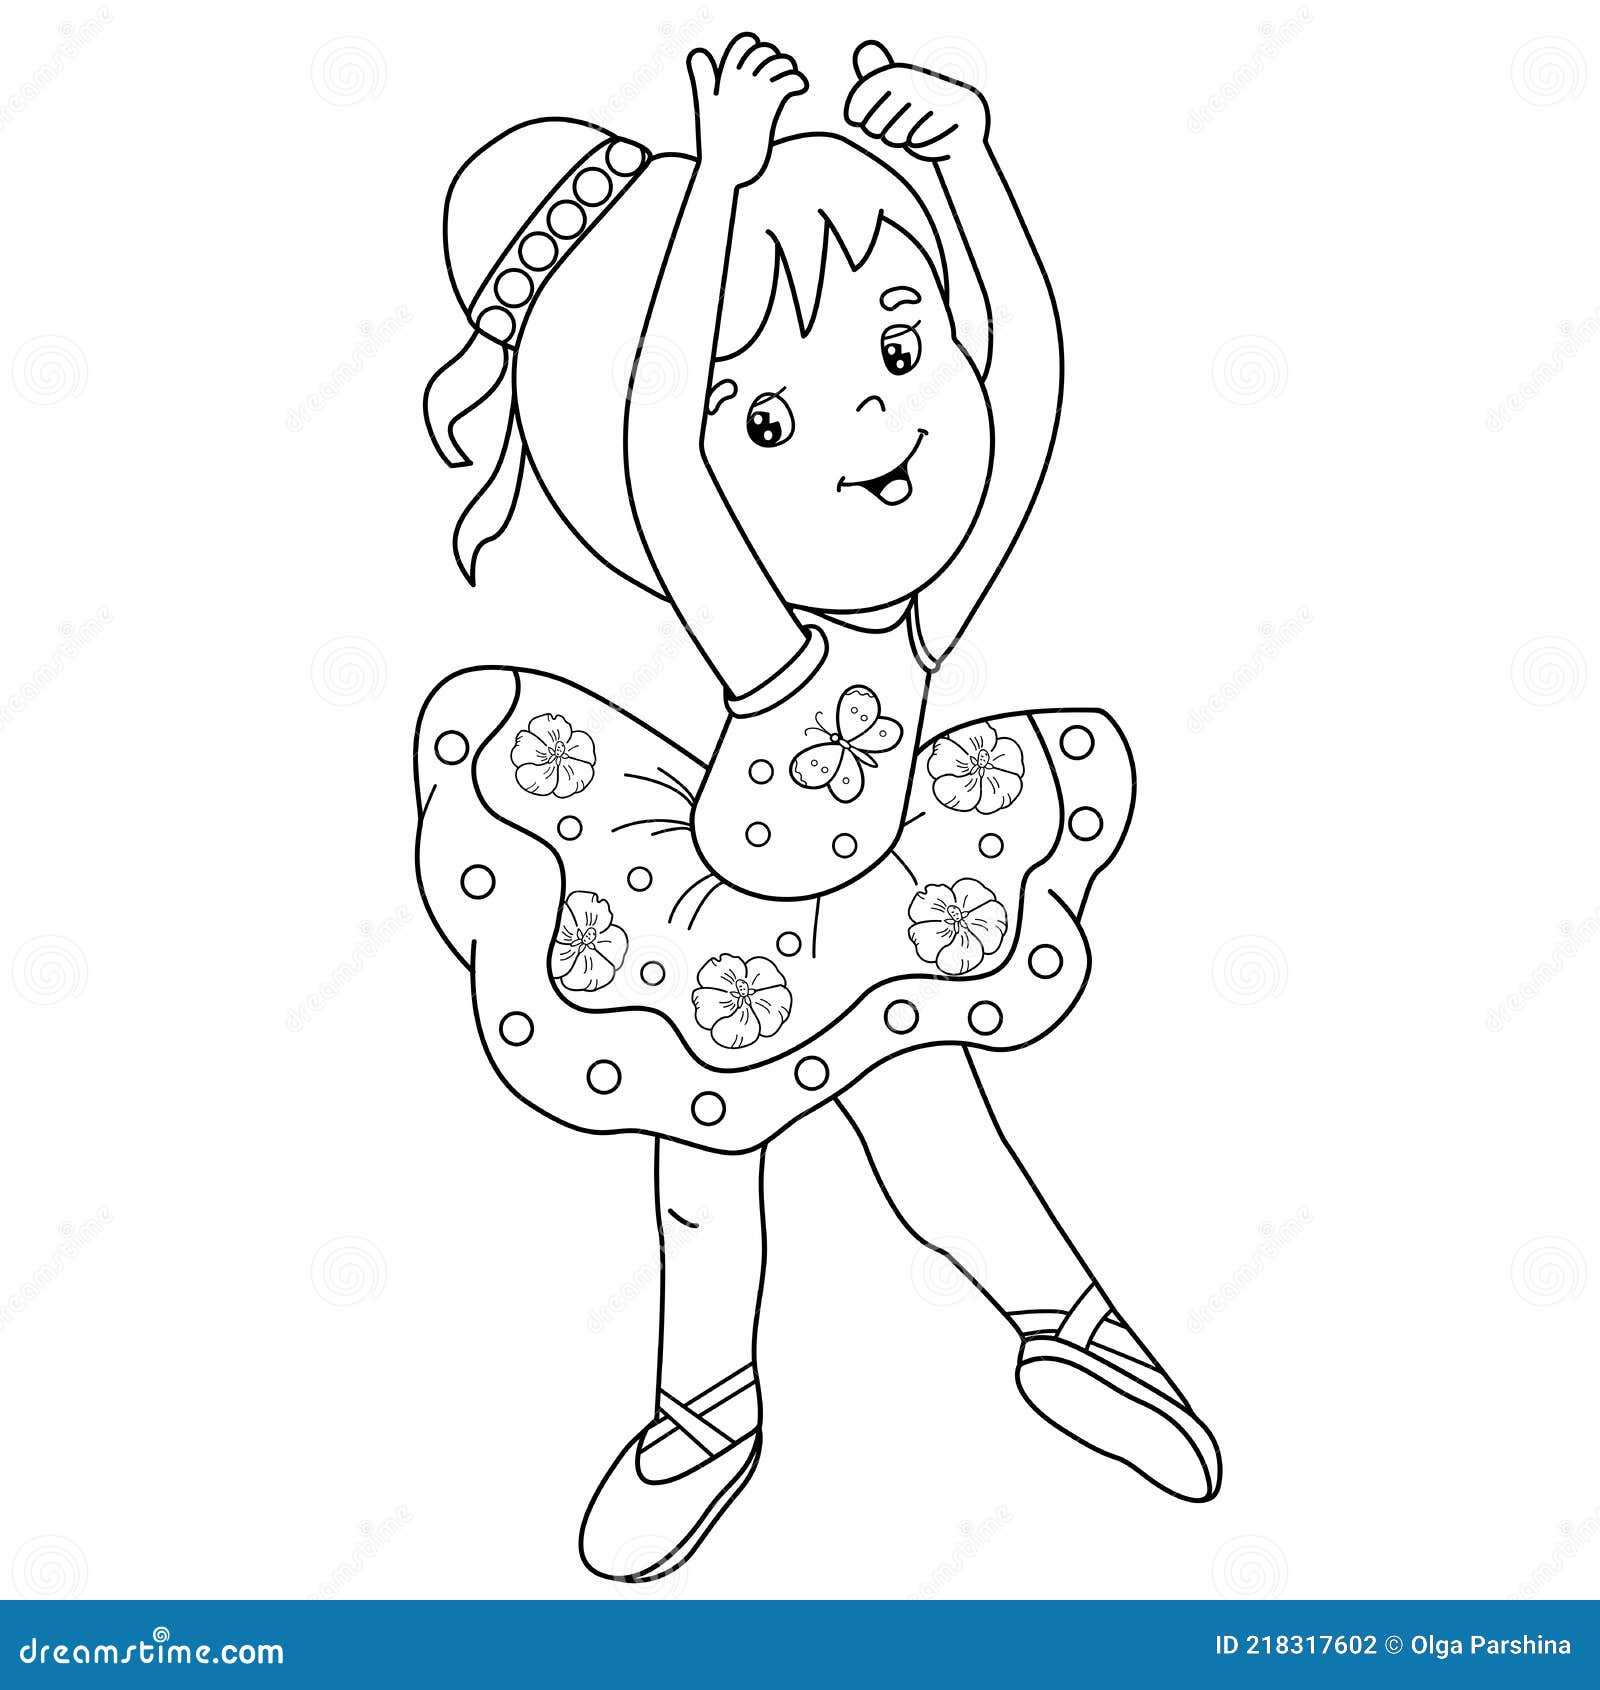 Livro de colorir para crianças dos desenhos animados bailarina